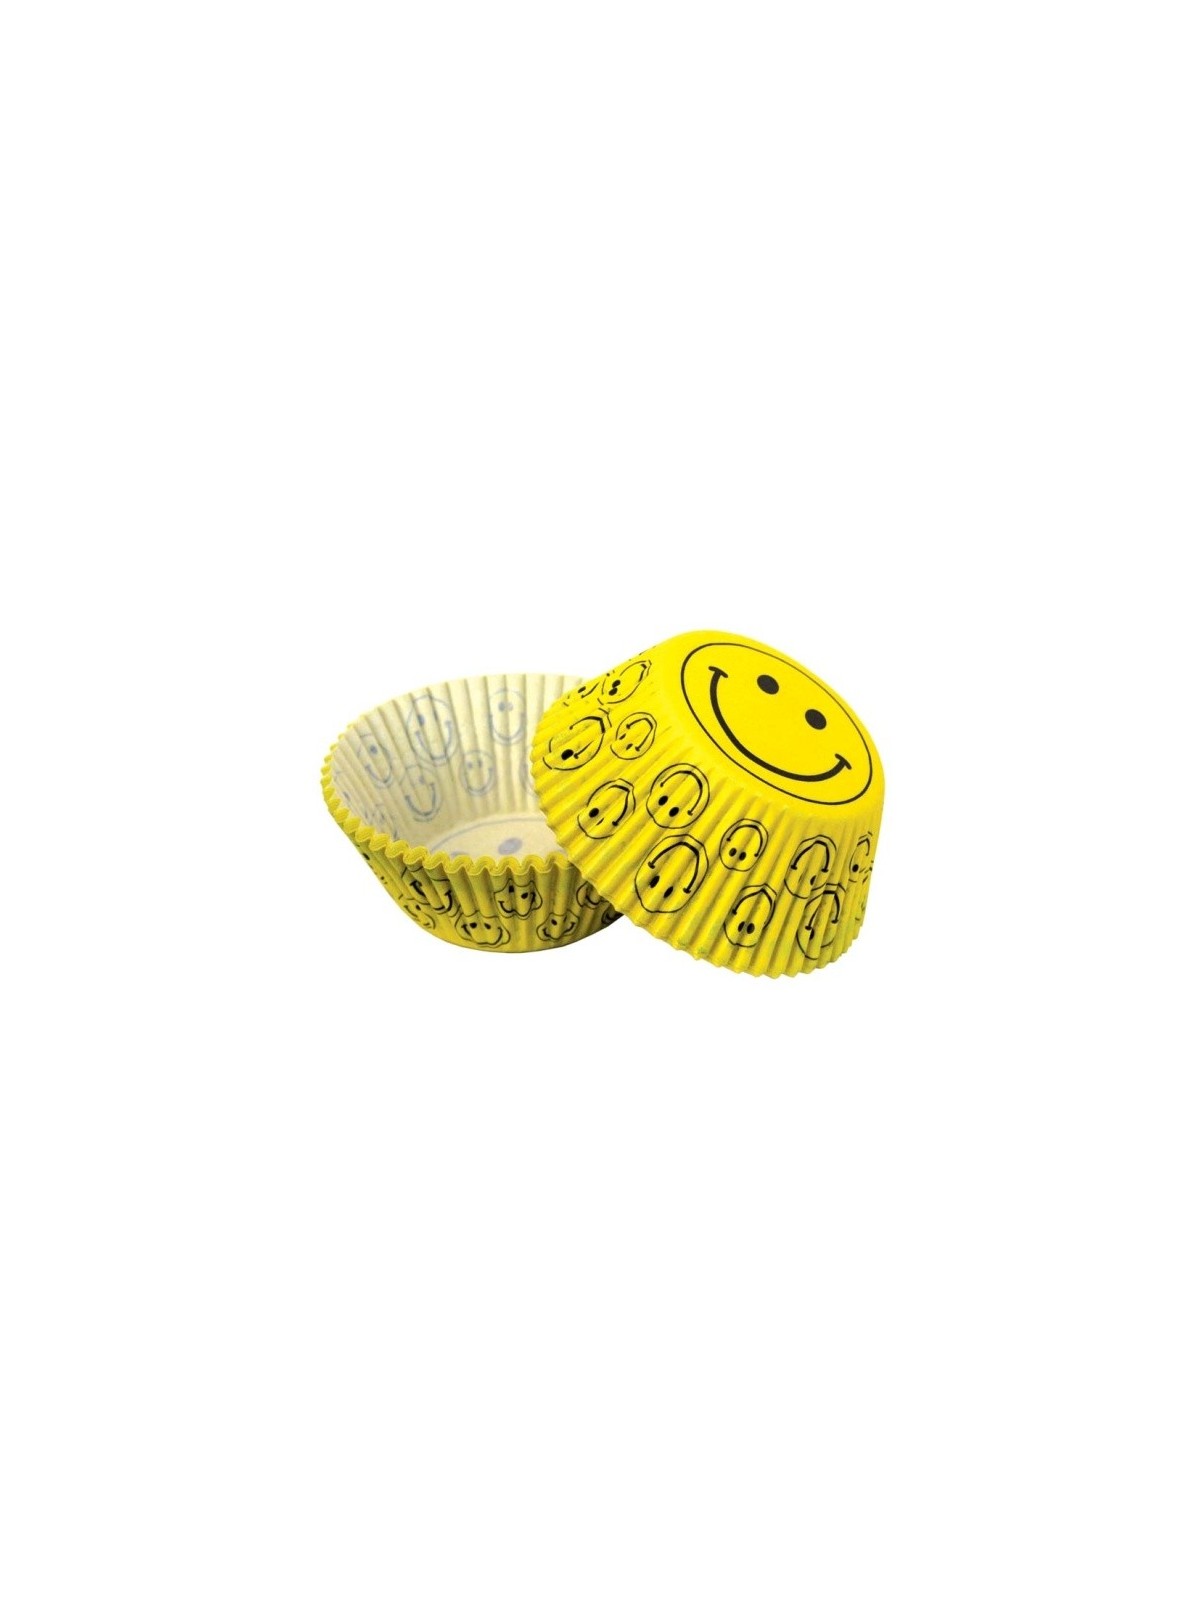 Cukrárske košíčky - smile žlté - 50ks